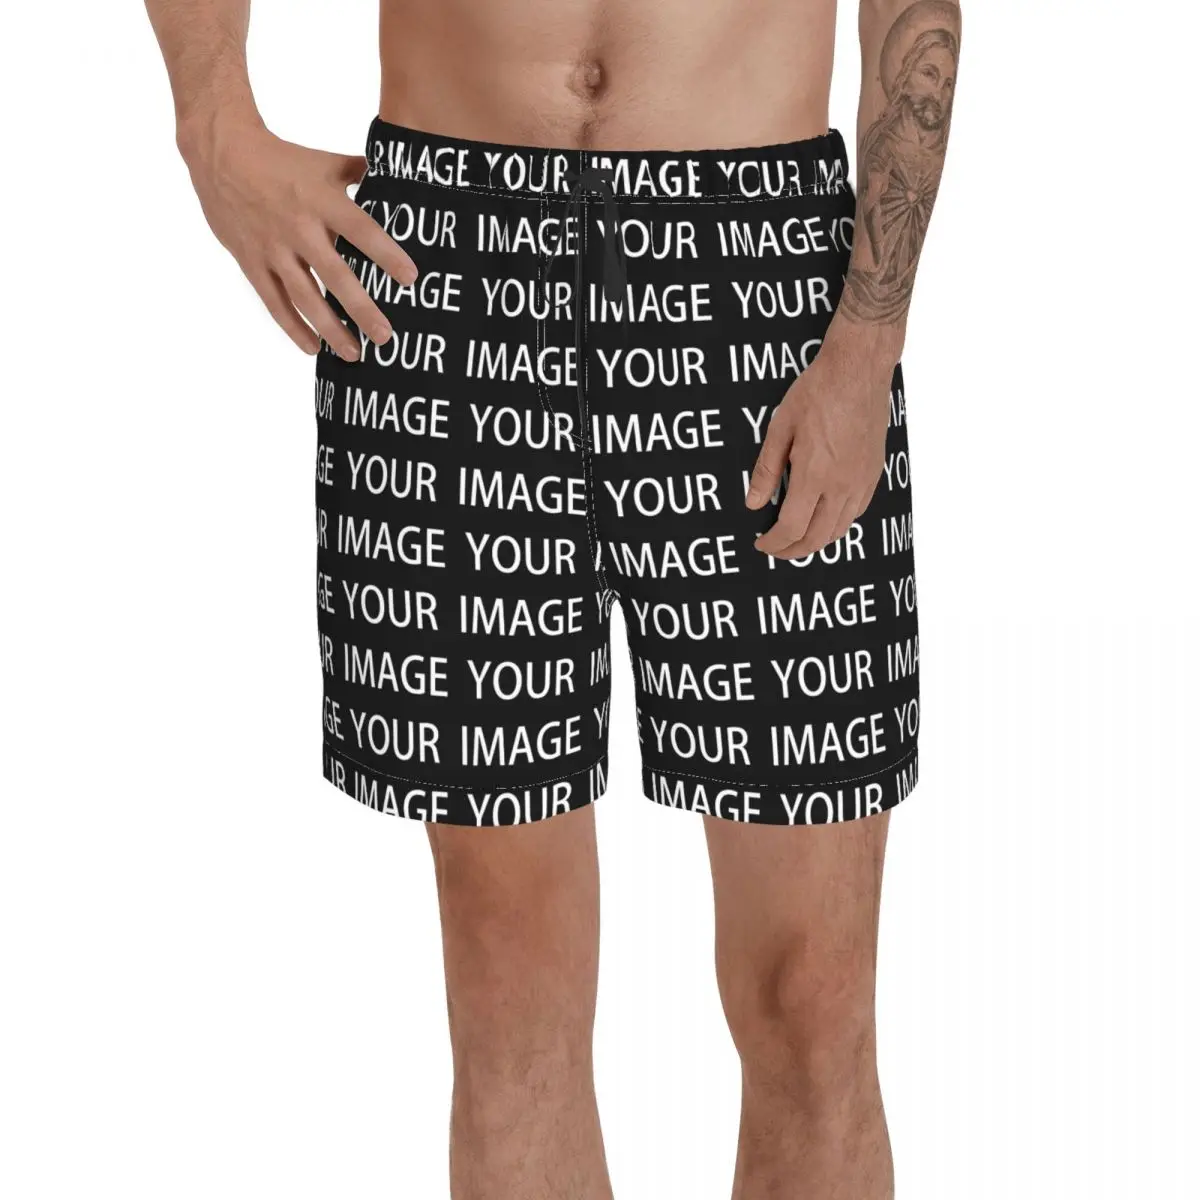 Uw Afbeelding Custom Made Board Shorts Aangepaste Ontwerp Uw Eigen Baden  Zwembroek Aangepaste Mannen Zwembroek|Zwembroeken| - AliExpress